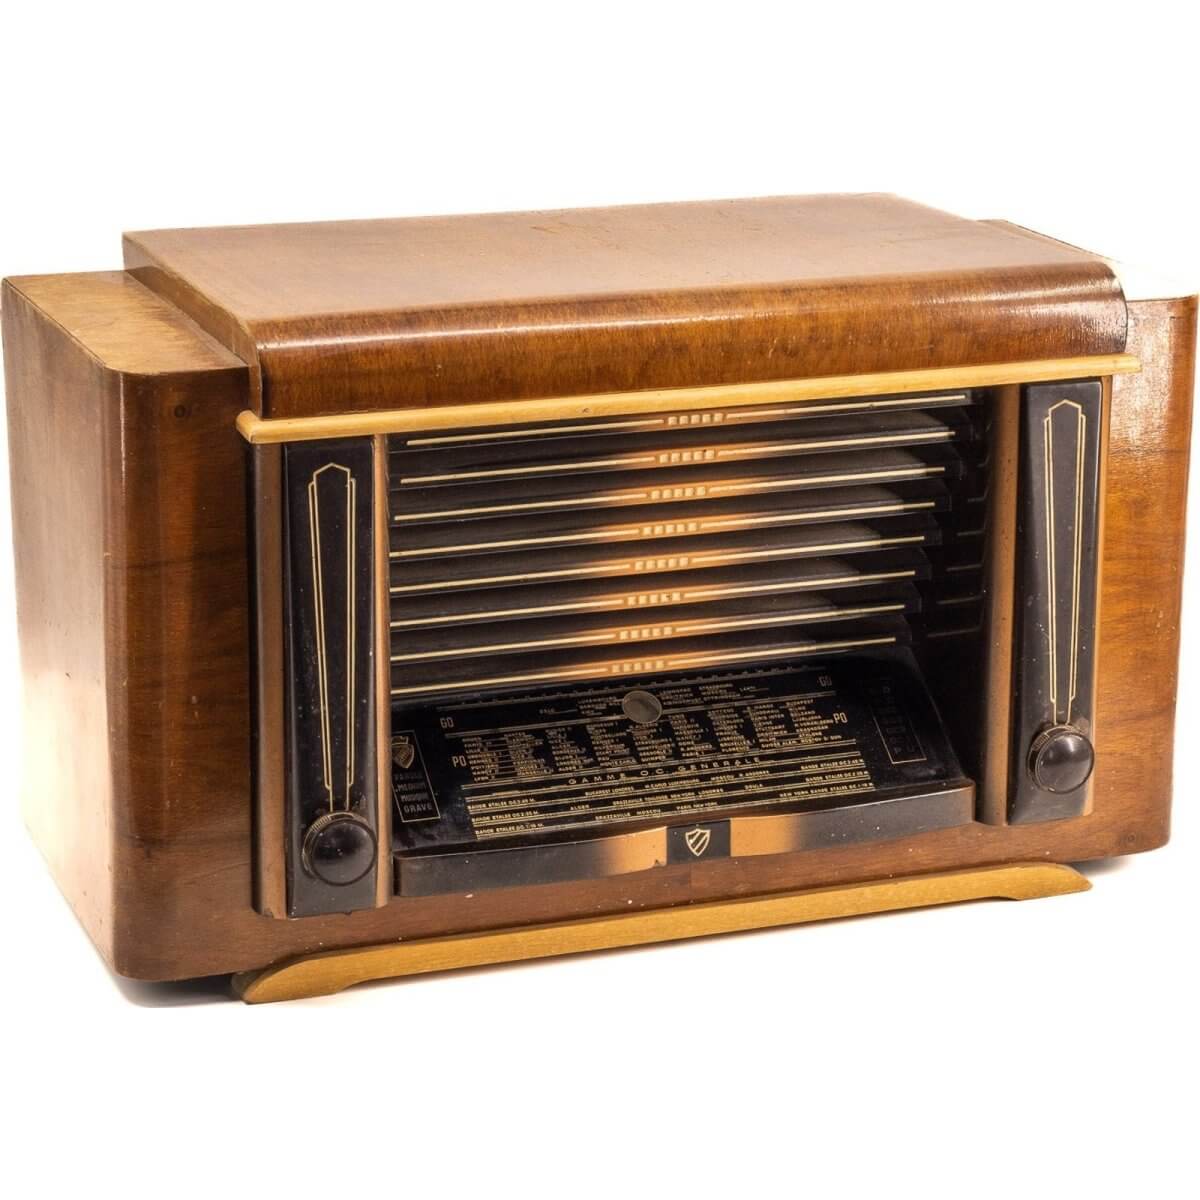 Radio Bluetooth Clarville Vintage 50’S enceinte connectée française haut de gamme prodige radio vintage